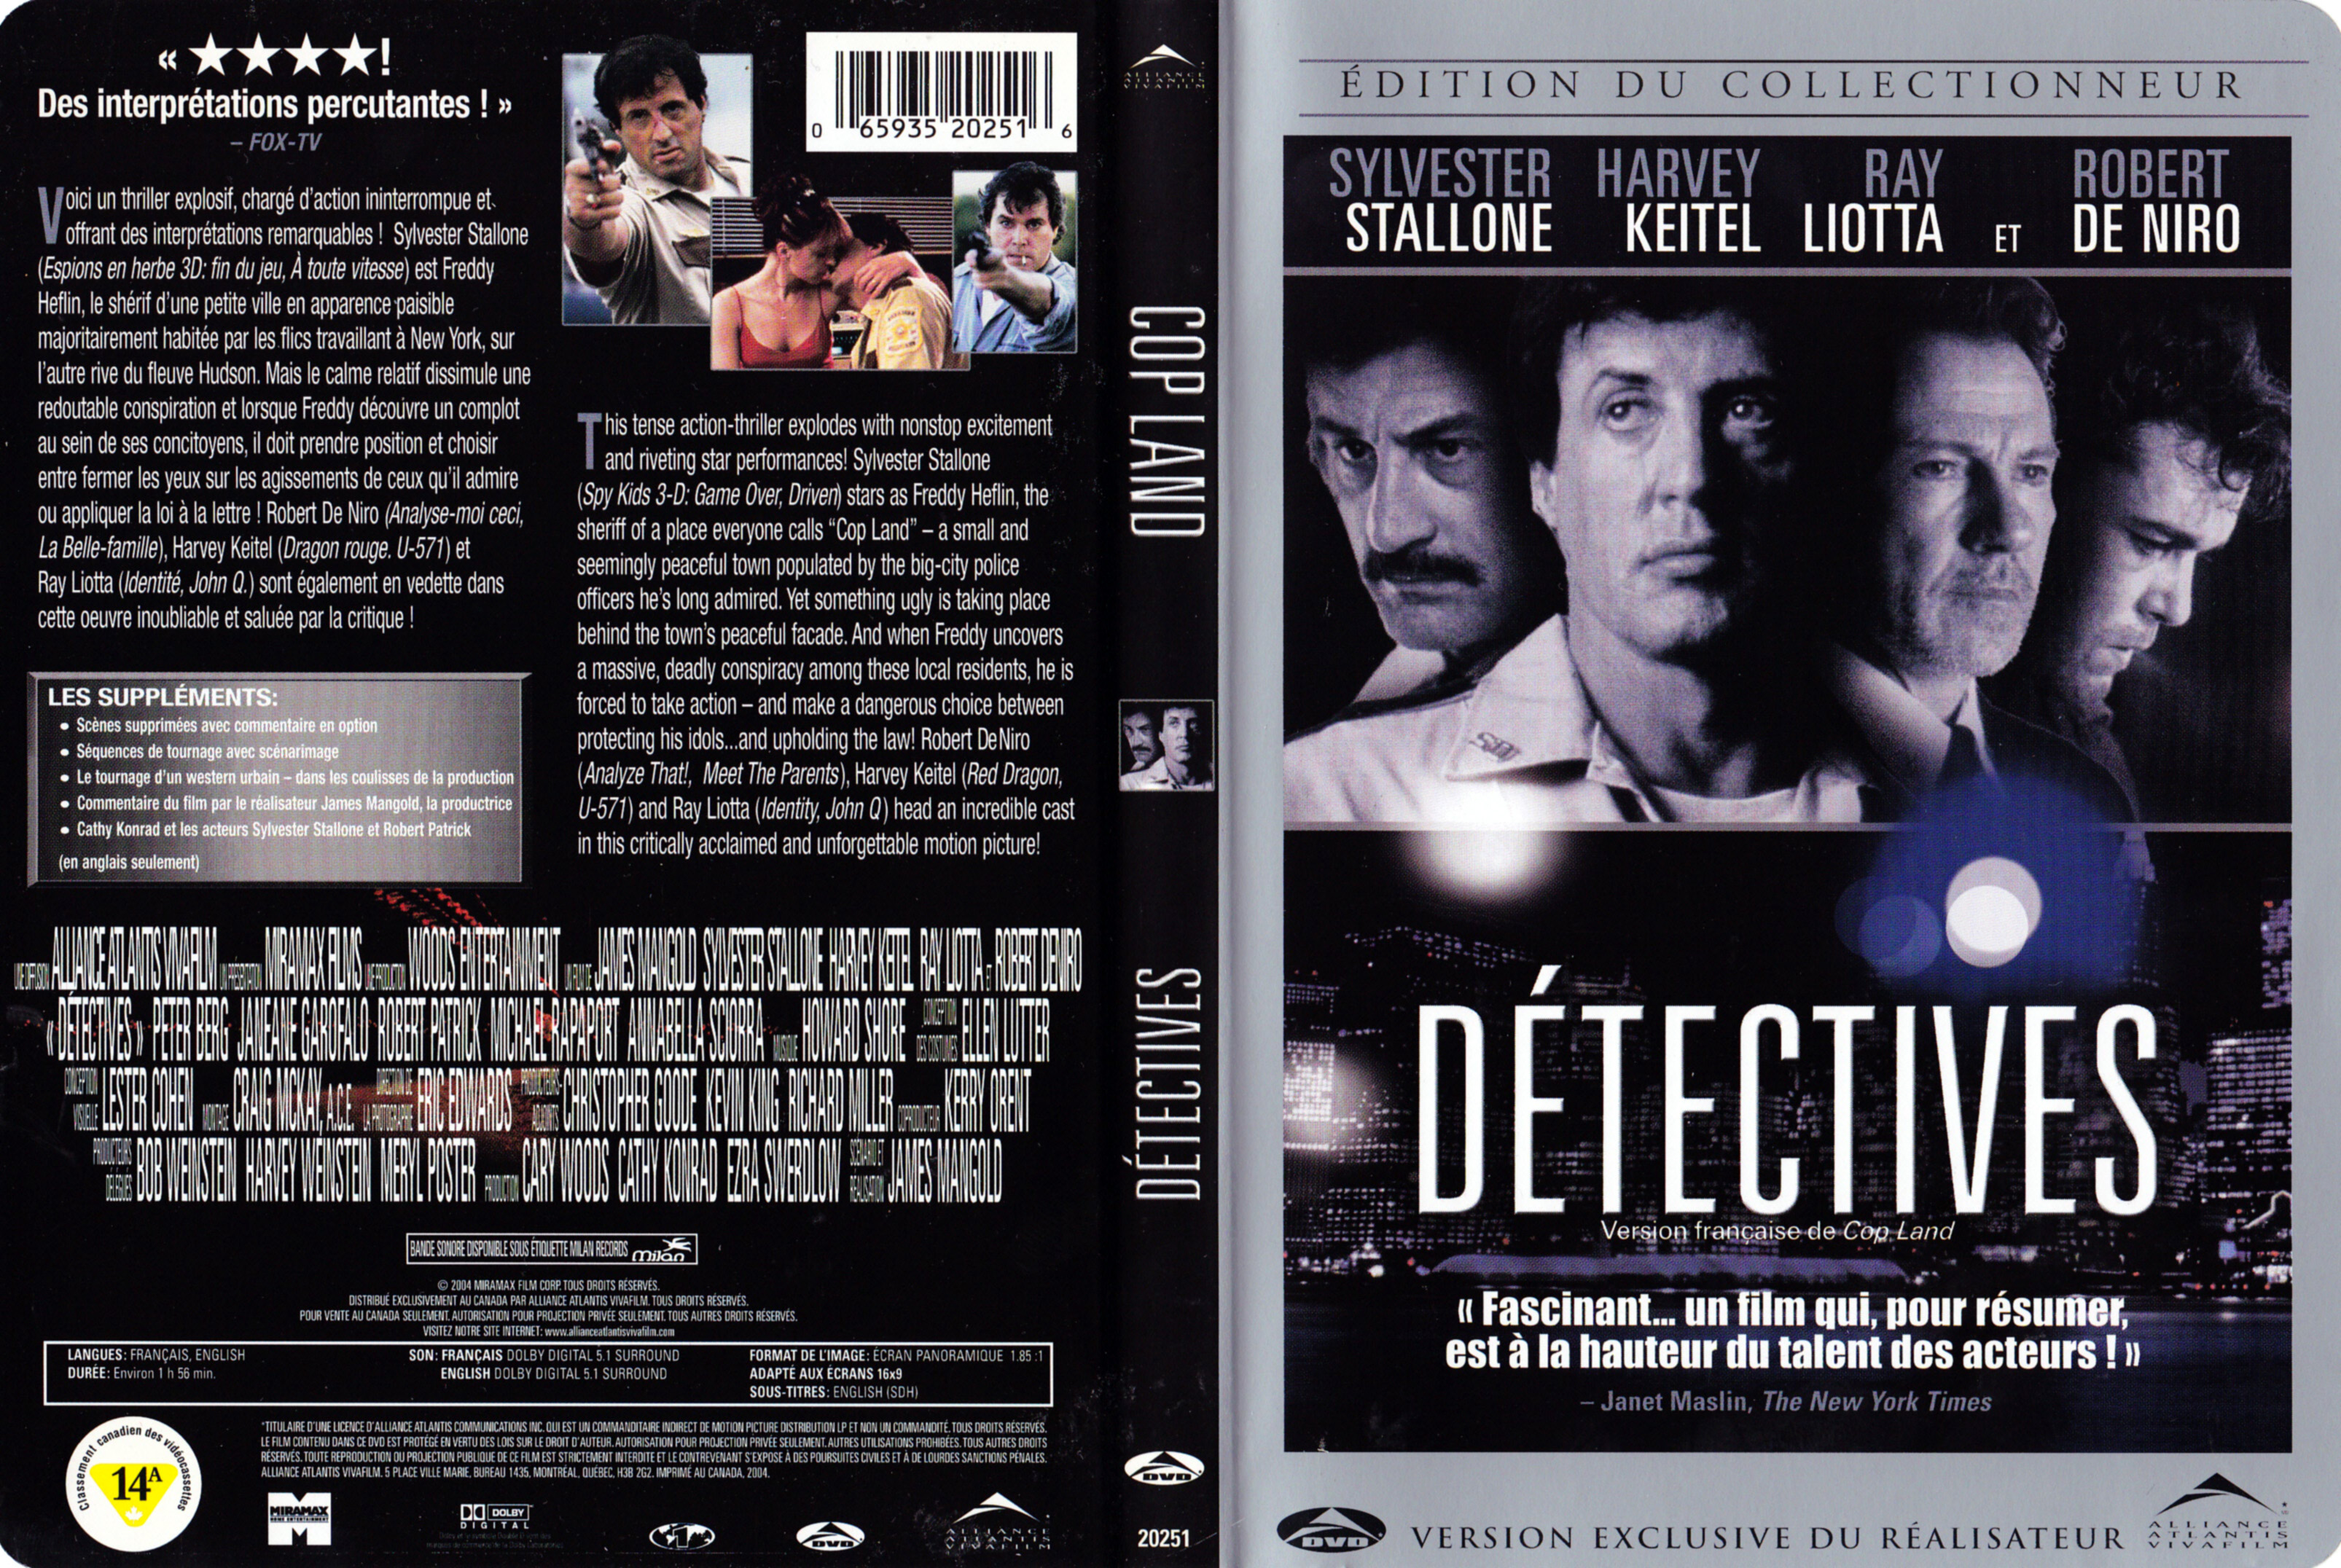 Jaquette DVD Dtectives - Cop land (Canadienne)